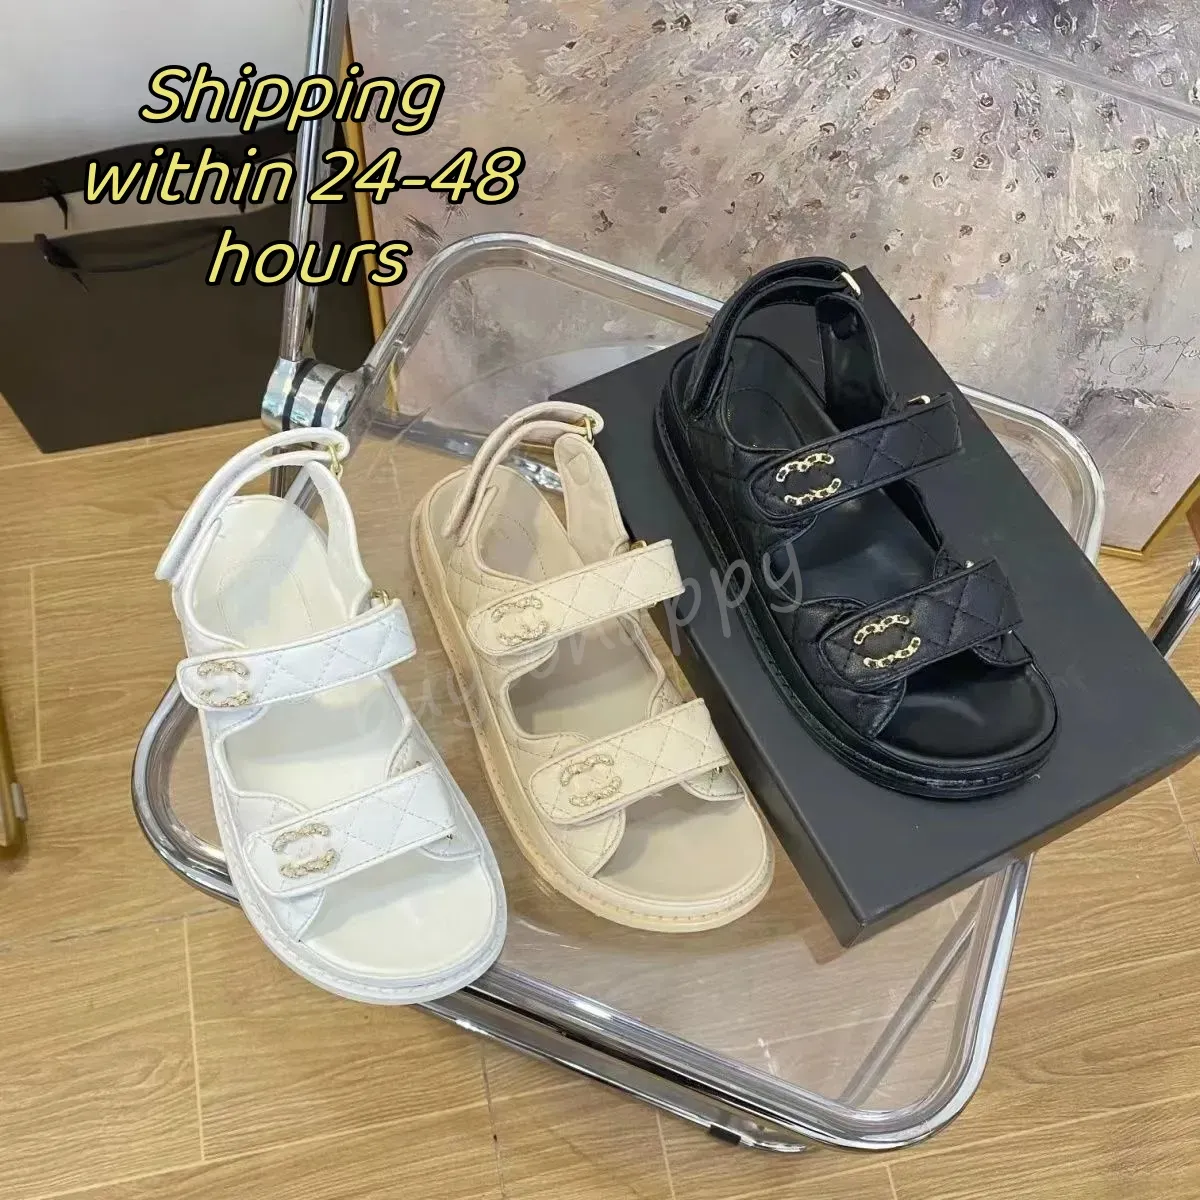 Canal de diseñadores zapato sandalias de mujeres tamaño 35-42 Toboganes de alta calidad Toblos de cristal zapatos casuales de cuero de ternero